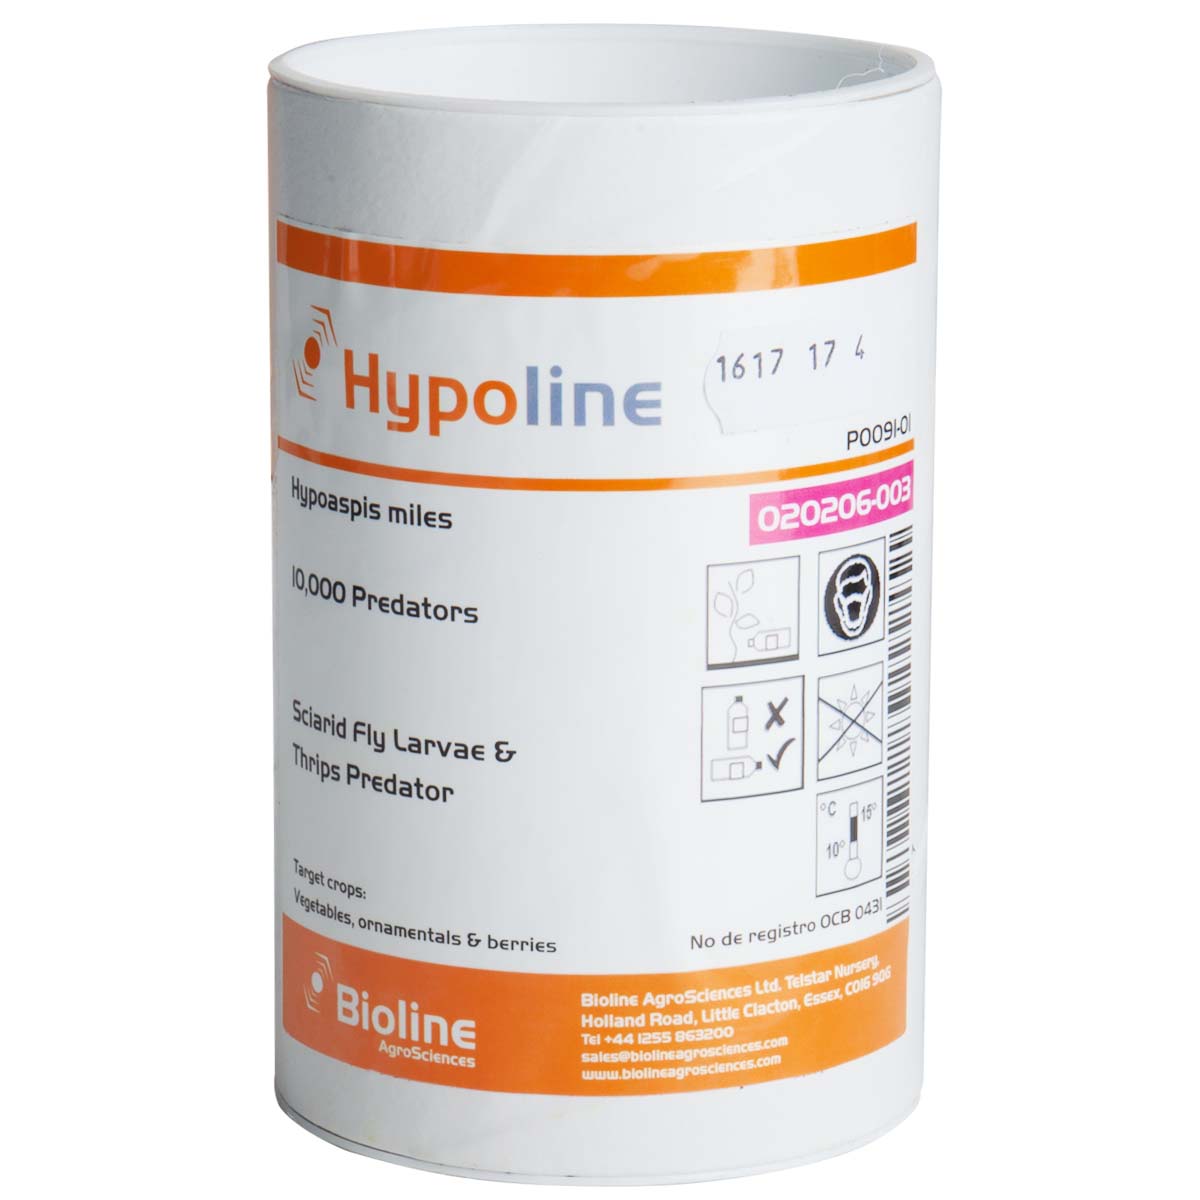 Hypoline (Hypoapsis miles)